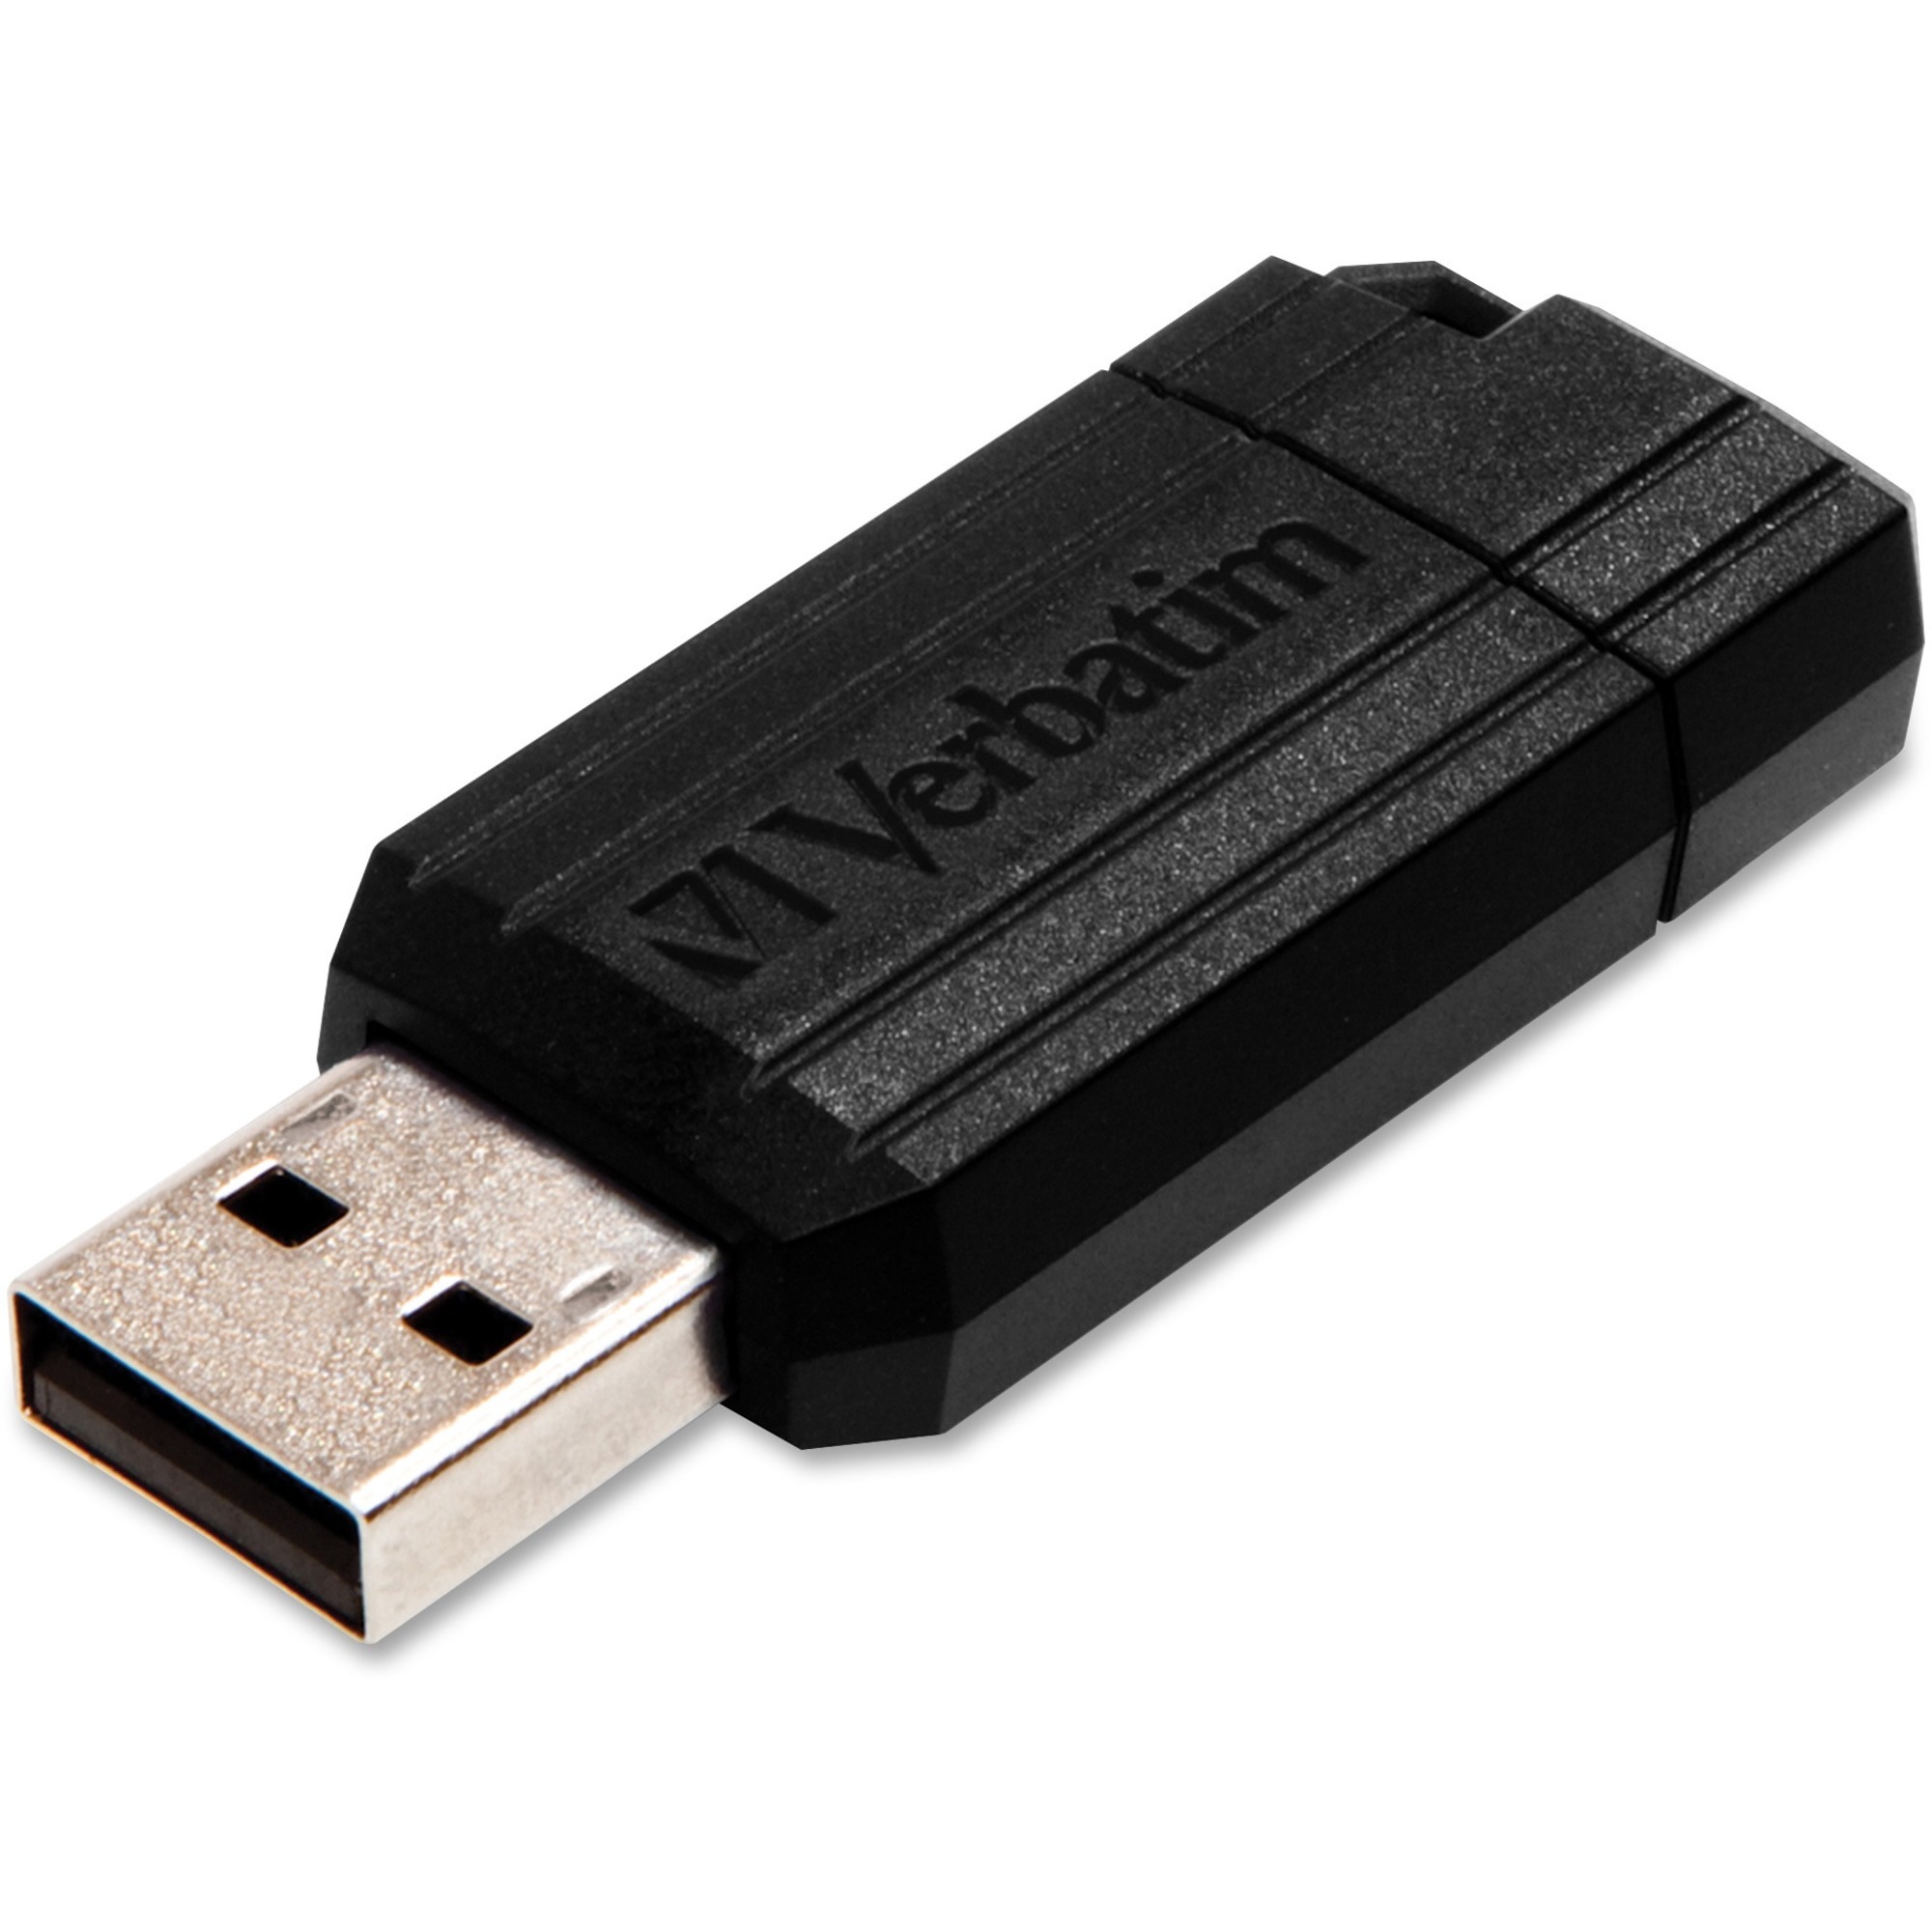 8GB USB Drive - Ready-Set-Start